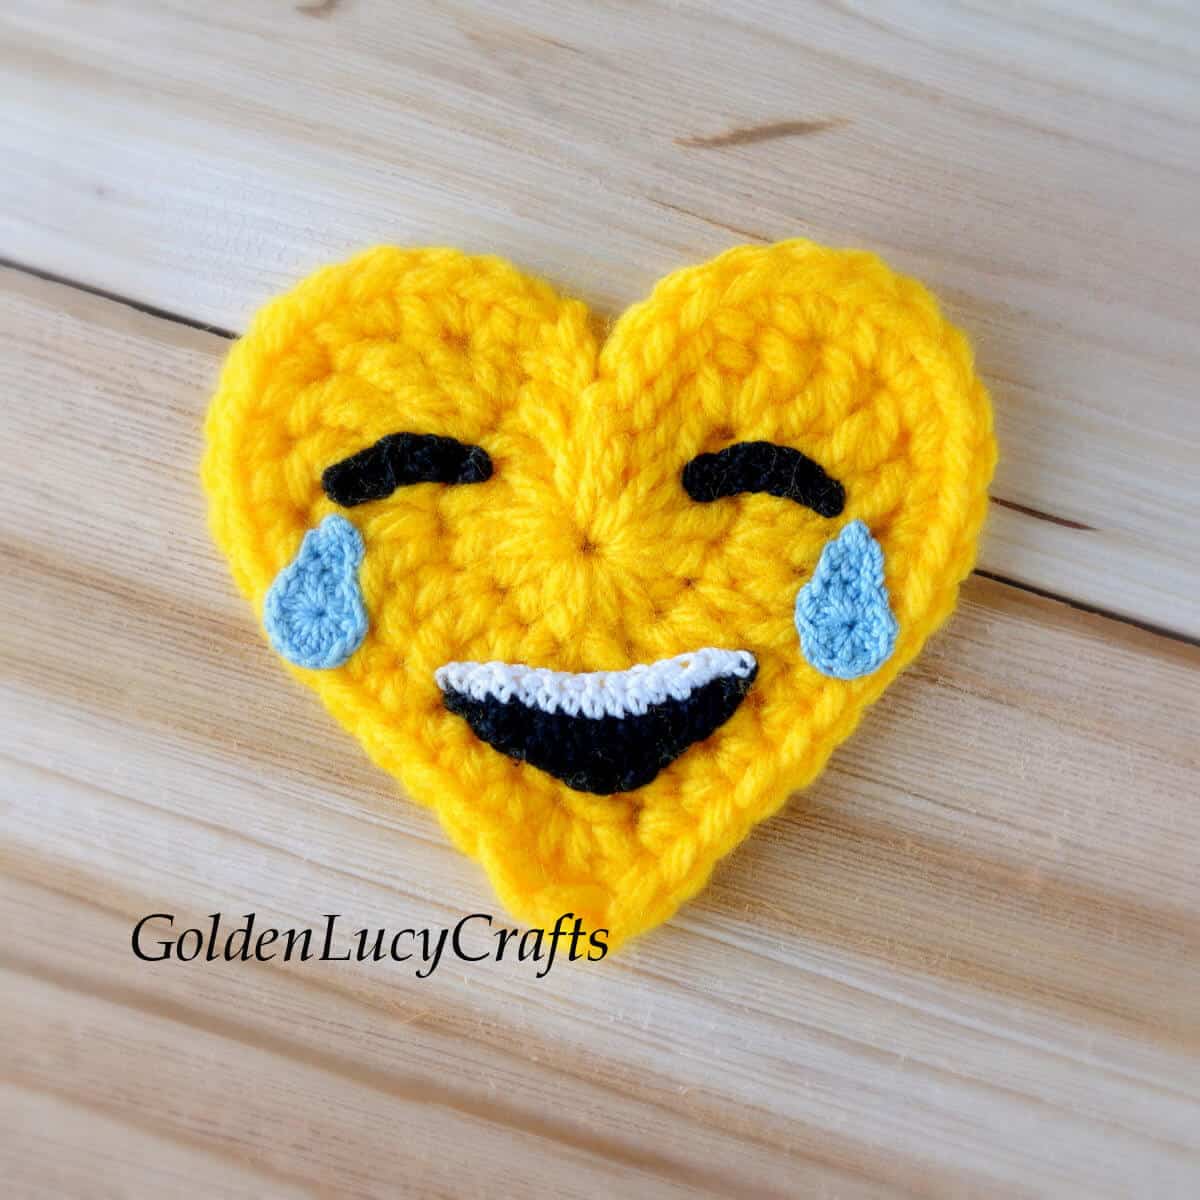 Crocheted heart-shaped tears of joy emoji.